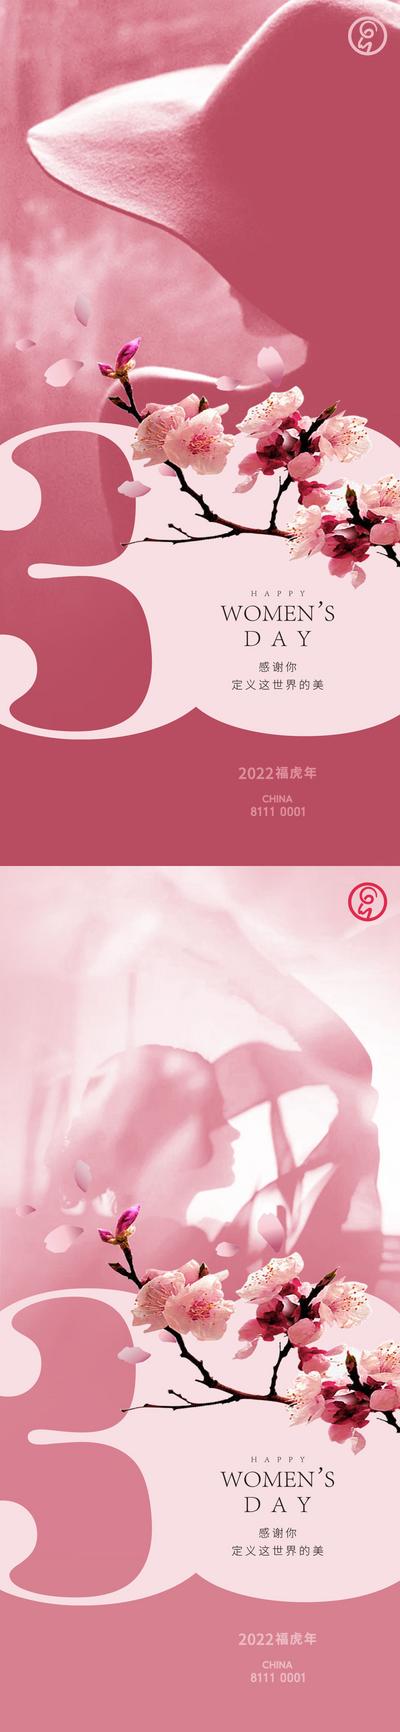 南门网 海报 公历节日 妇女节 38 女神节 女王节 女性 插画